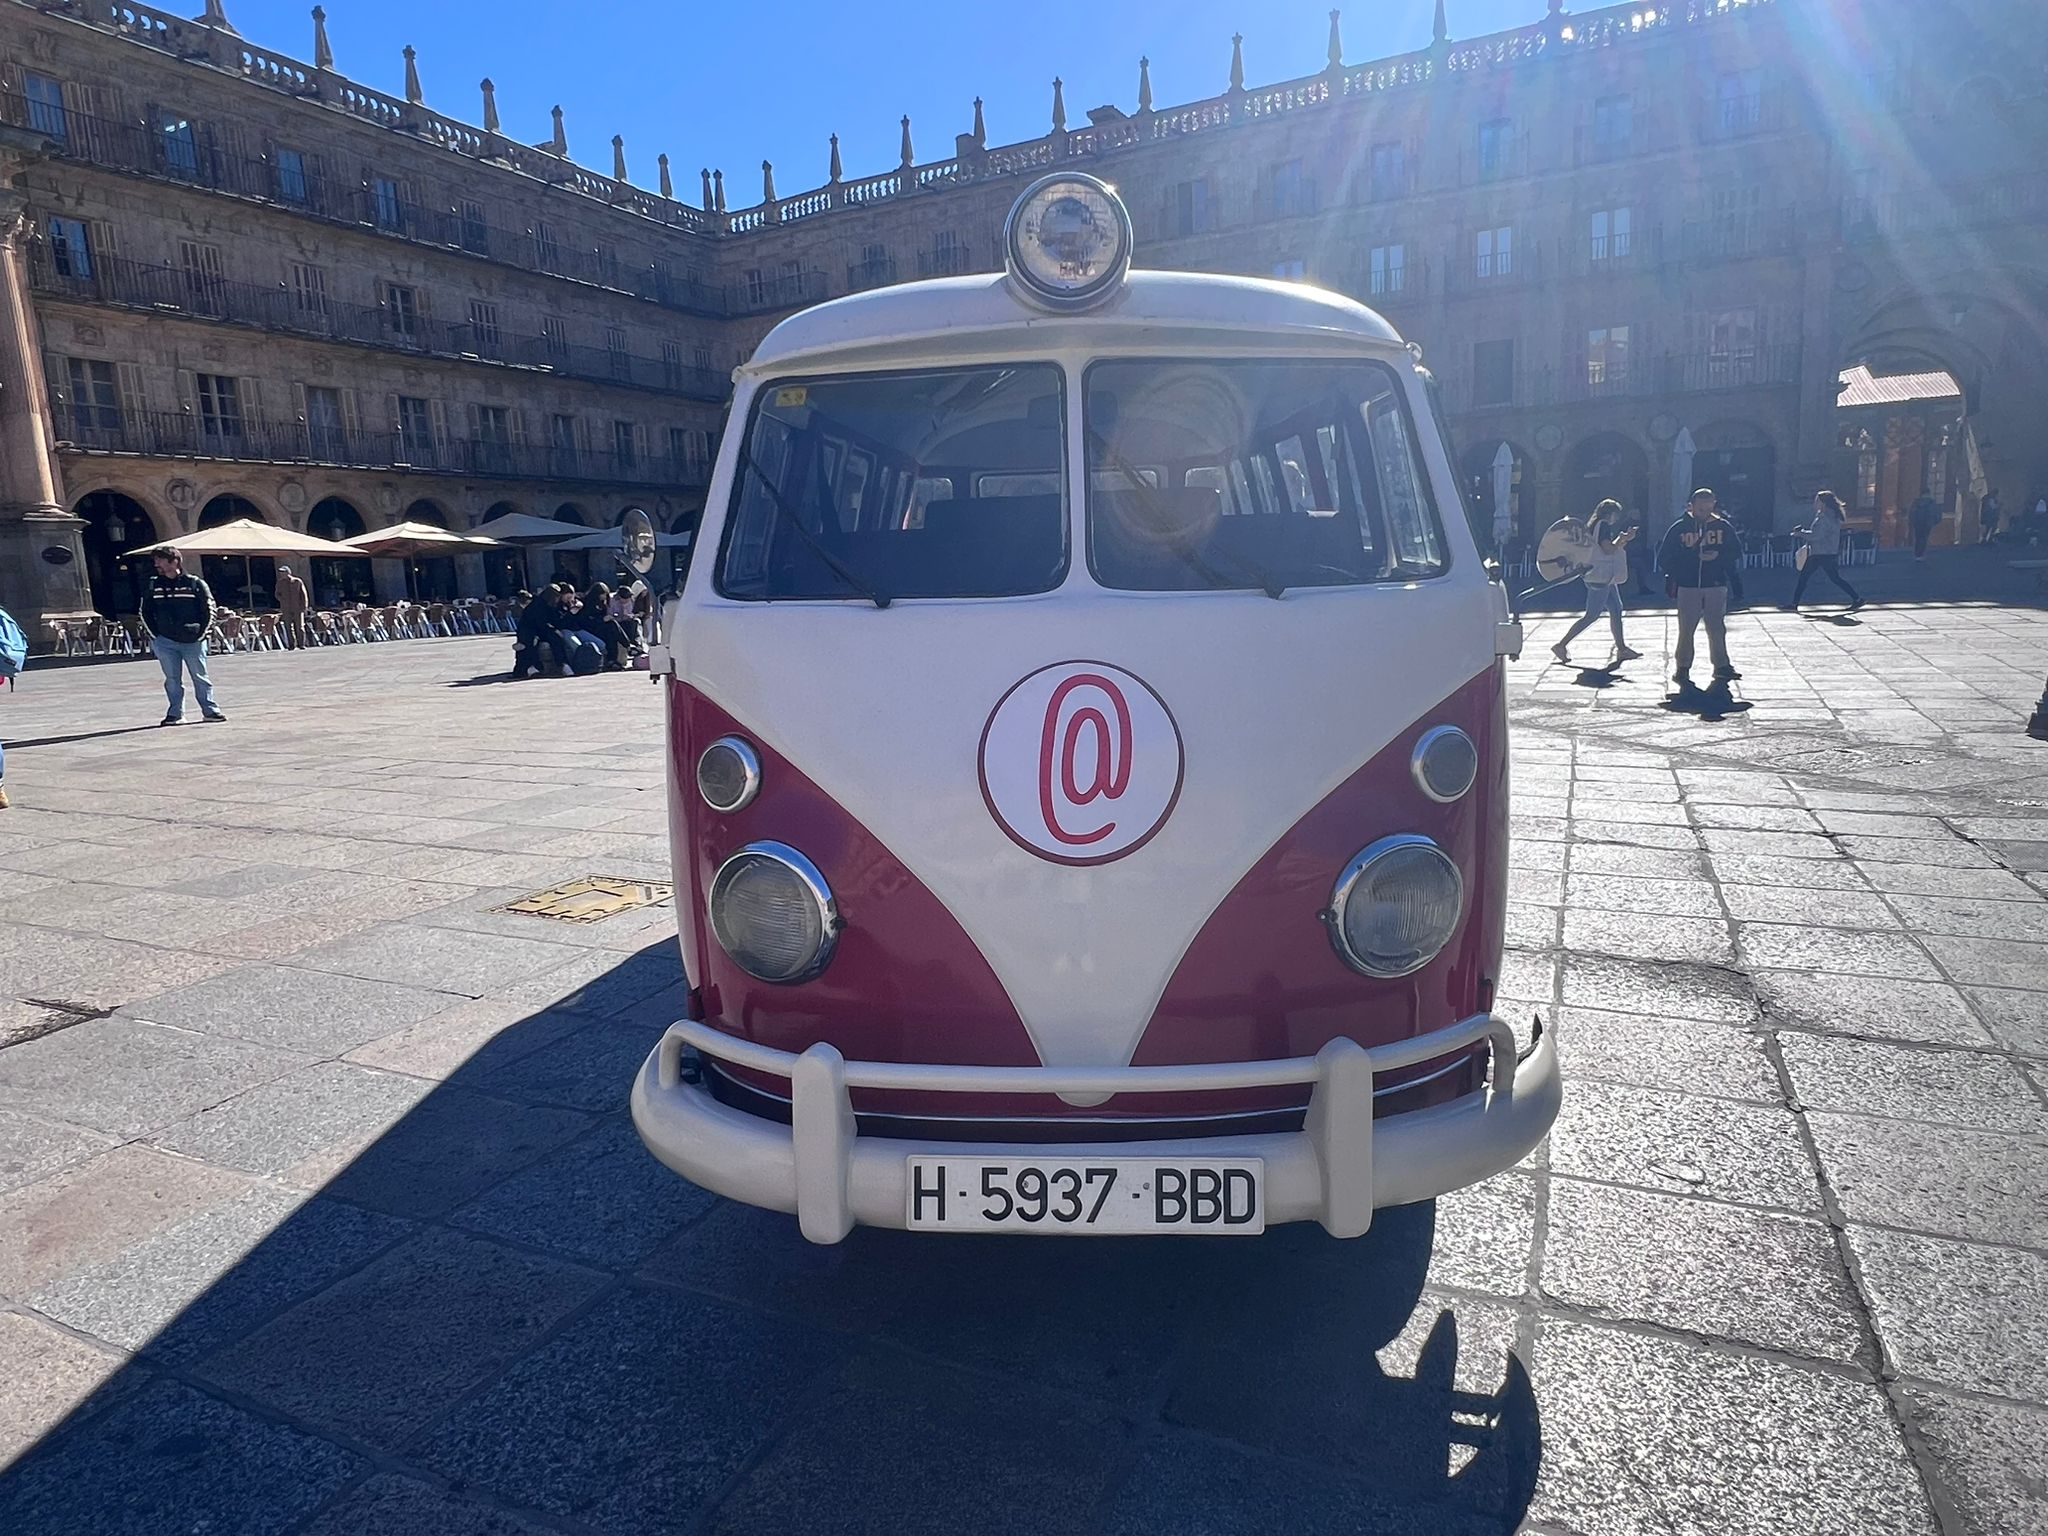 Rodaje de 'La caravana educativa' en la Plaza Mayor de Salamanca 